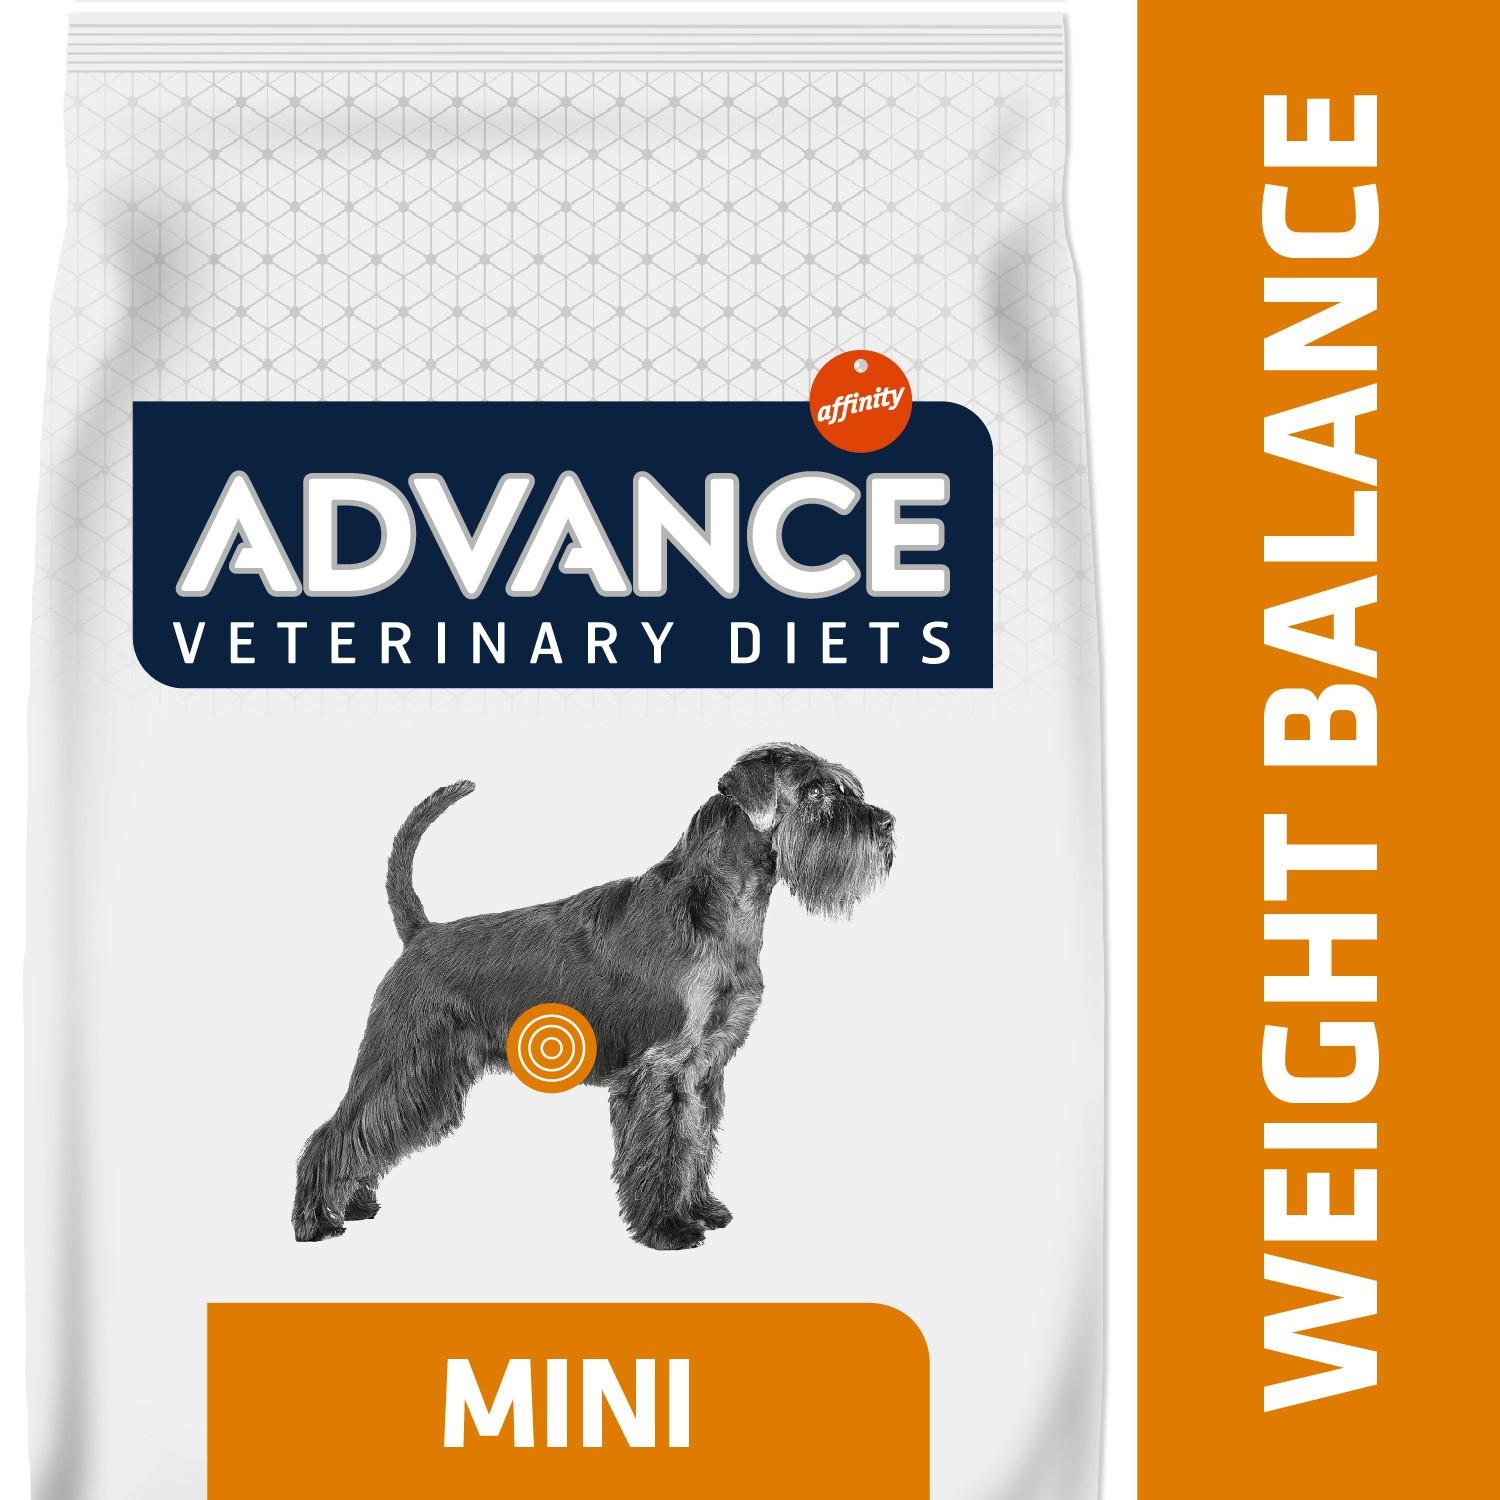 Mini croquetes veterinários para cães pequenos com excesso de peso Advance Veterinary Diets - Weight Balance Mini